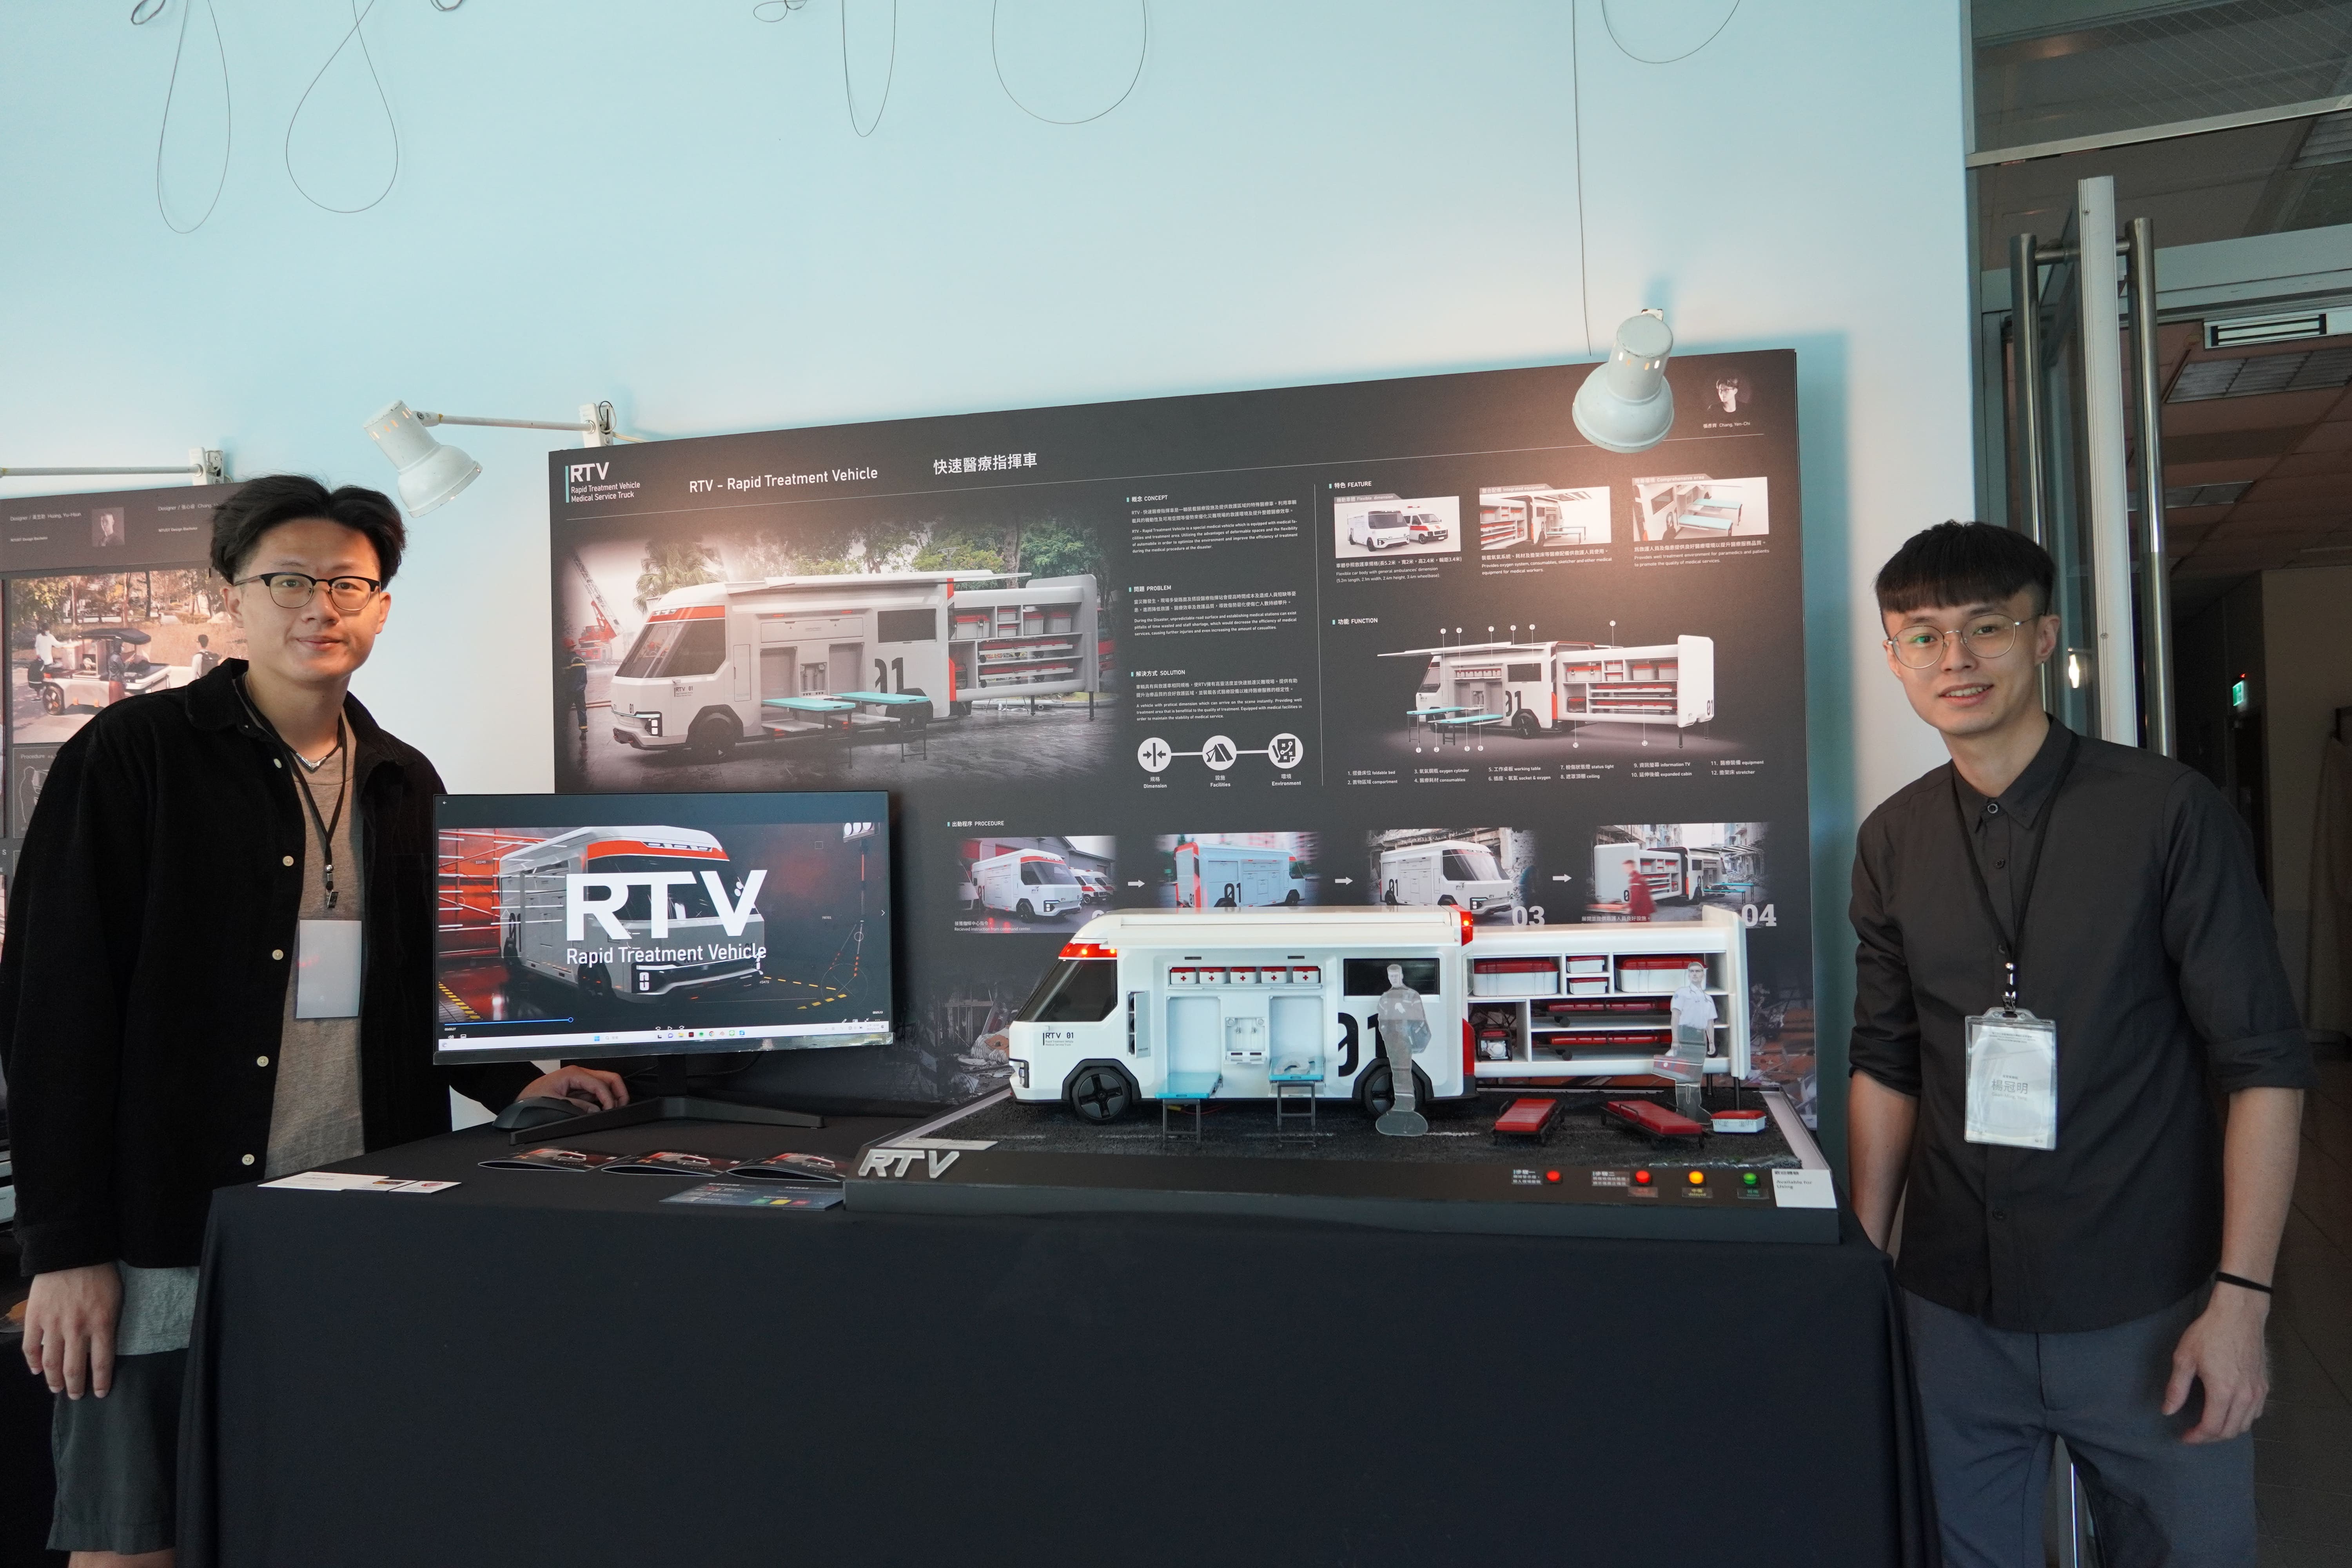 設計「RTV-快速醫療指揮車」的同學張彥齊(左)、楊冠明(右)大膽挑戰災難議題及交通工具設計。